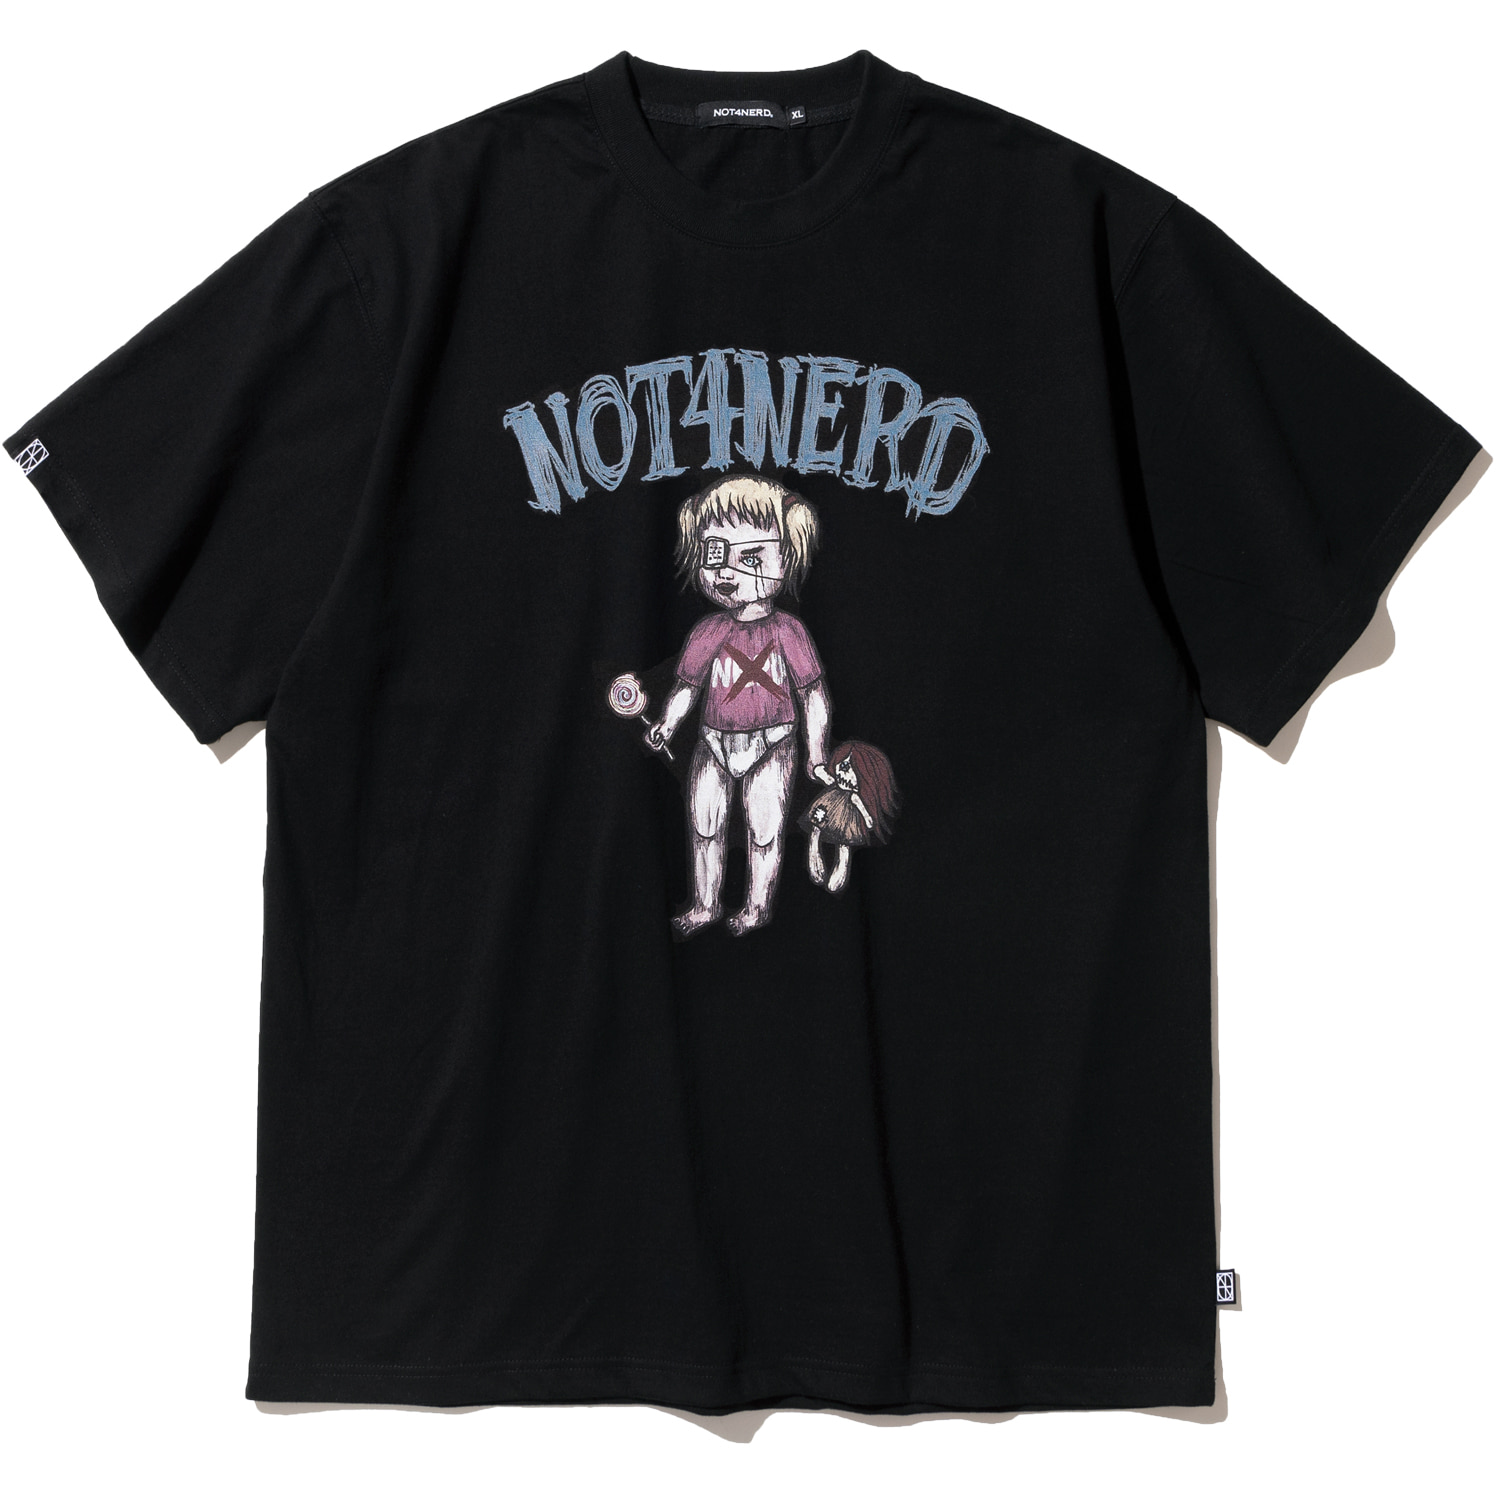 Little Girl T-Shirts - Black,NOT4NERD